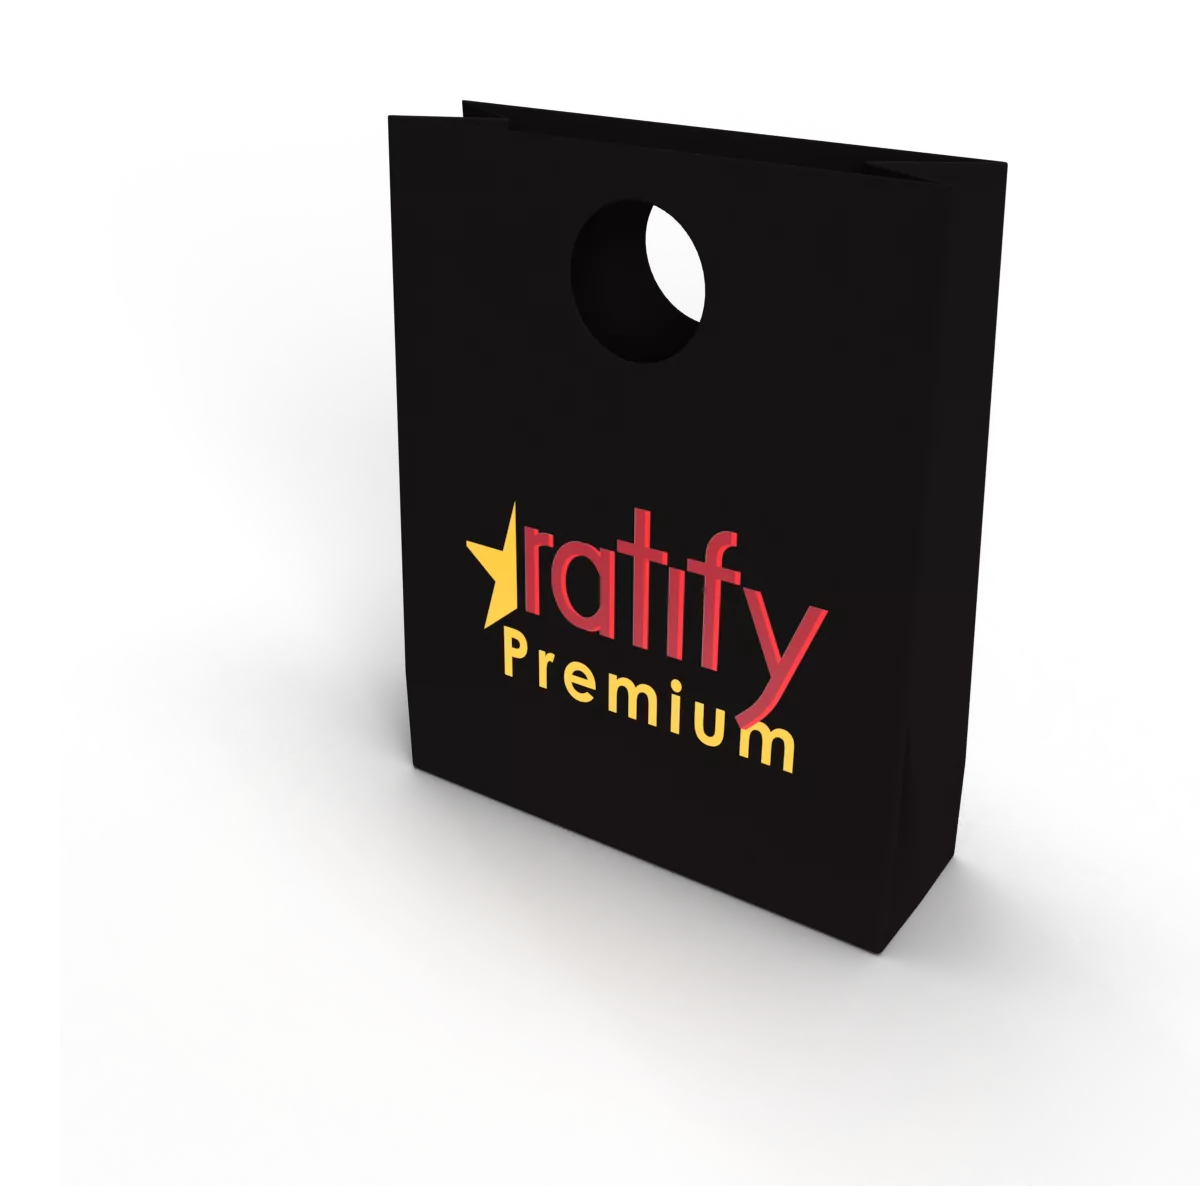 Ratify Premium